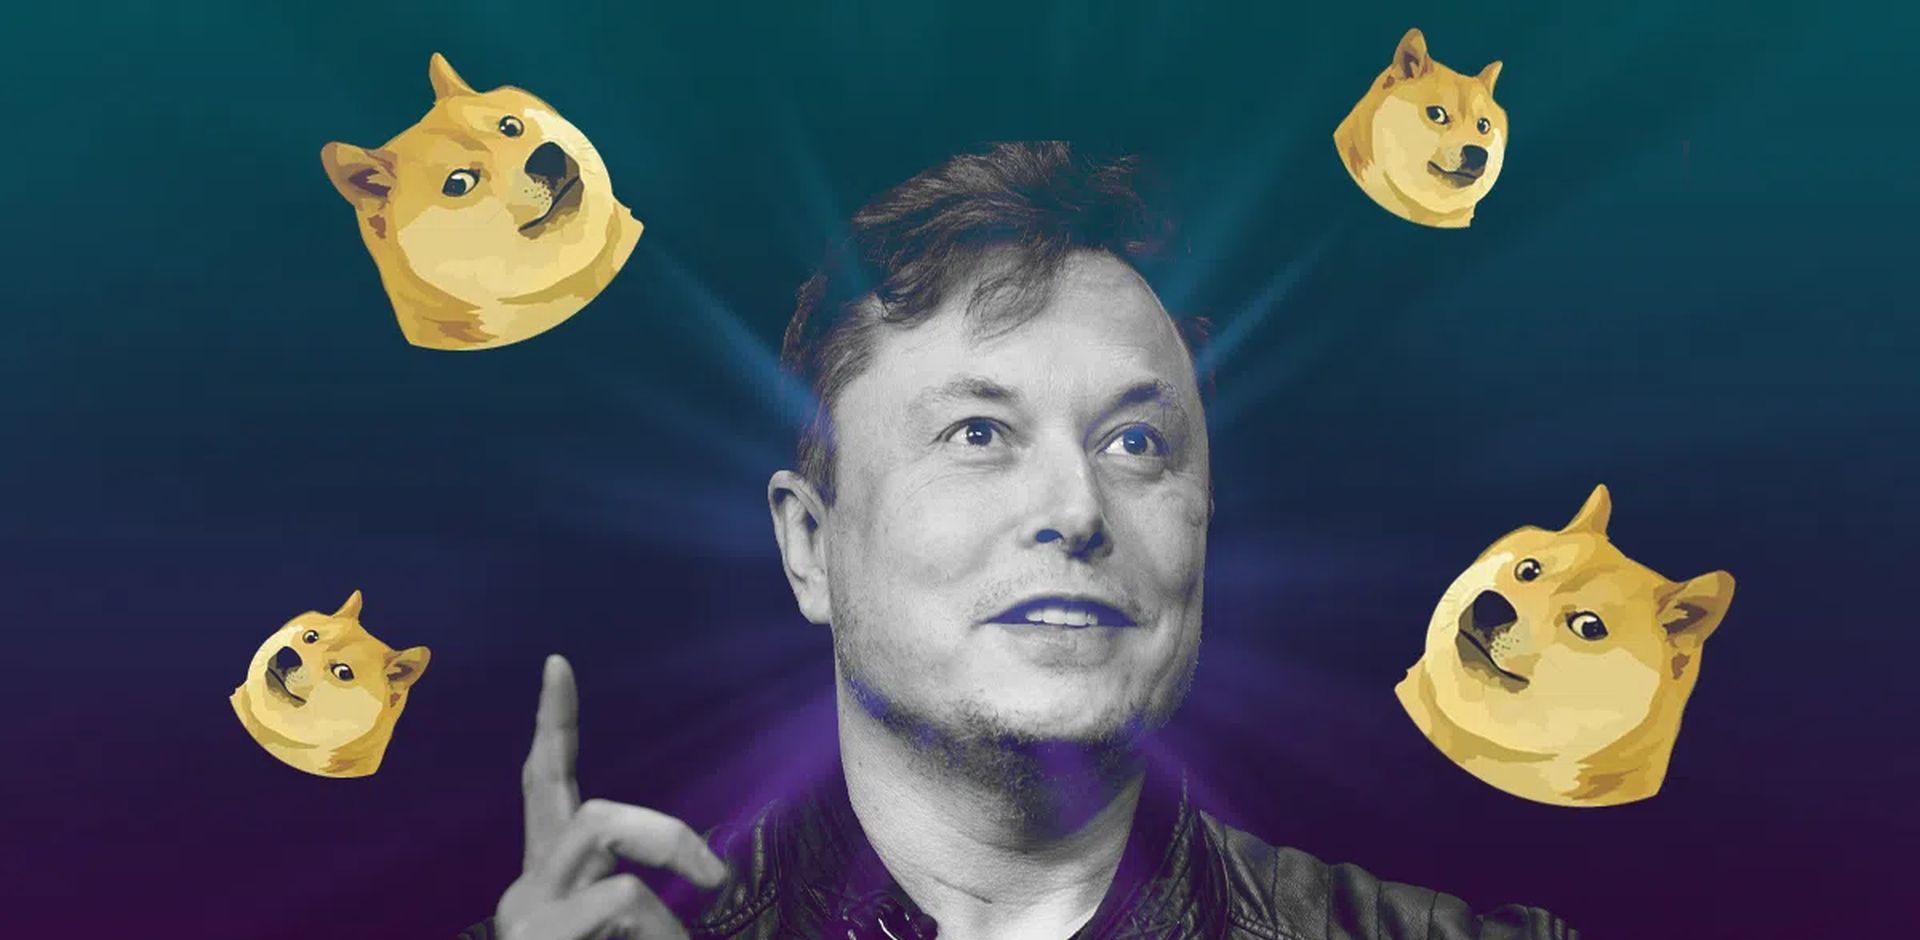 Auch nachdem Elon Musk wegen Behauptungen des Dogecoin-Pyramidensystems verklagt hat, sagt er das "Ich werde Dogecoin weiterhin unterstützen" und behauptet auch, dass er immer noch kauft.